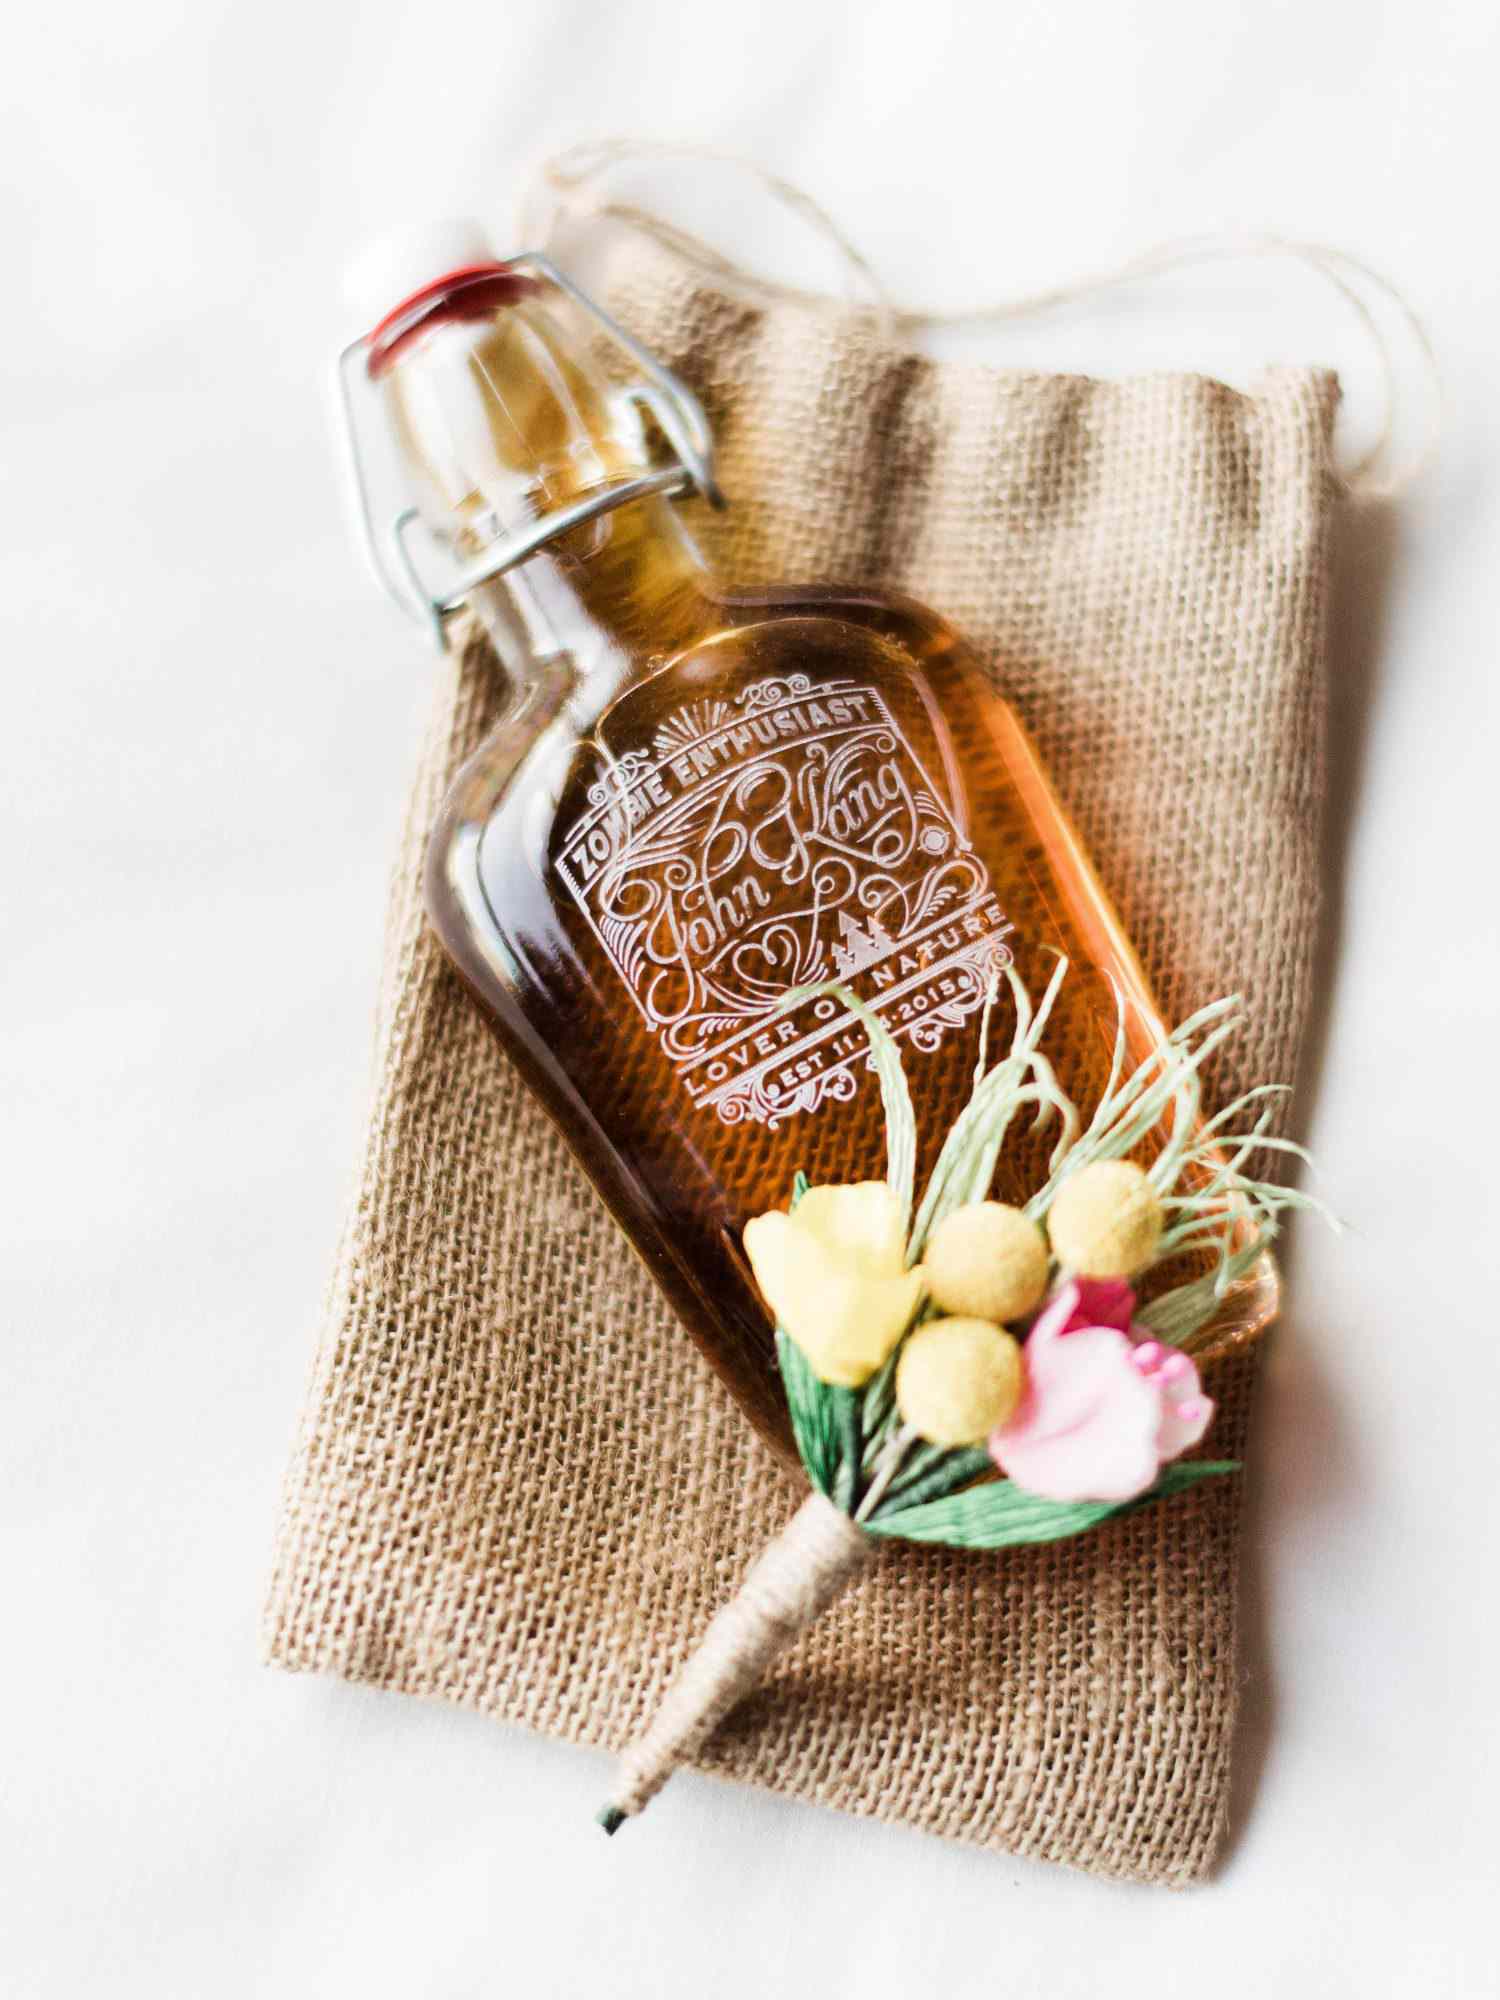 syrup in bottle wedding favor